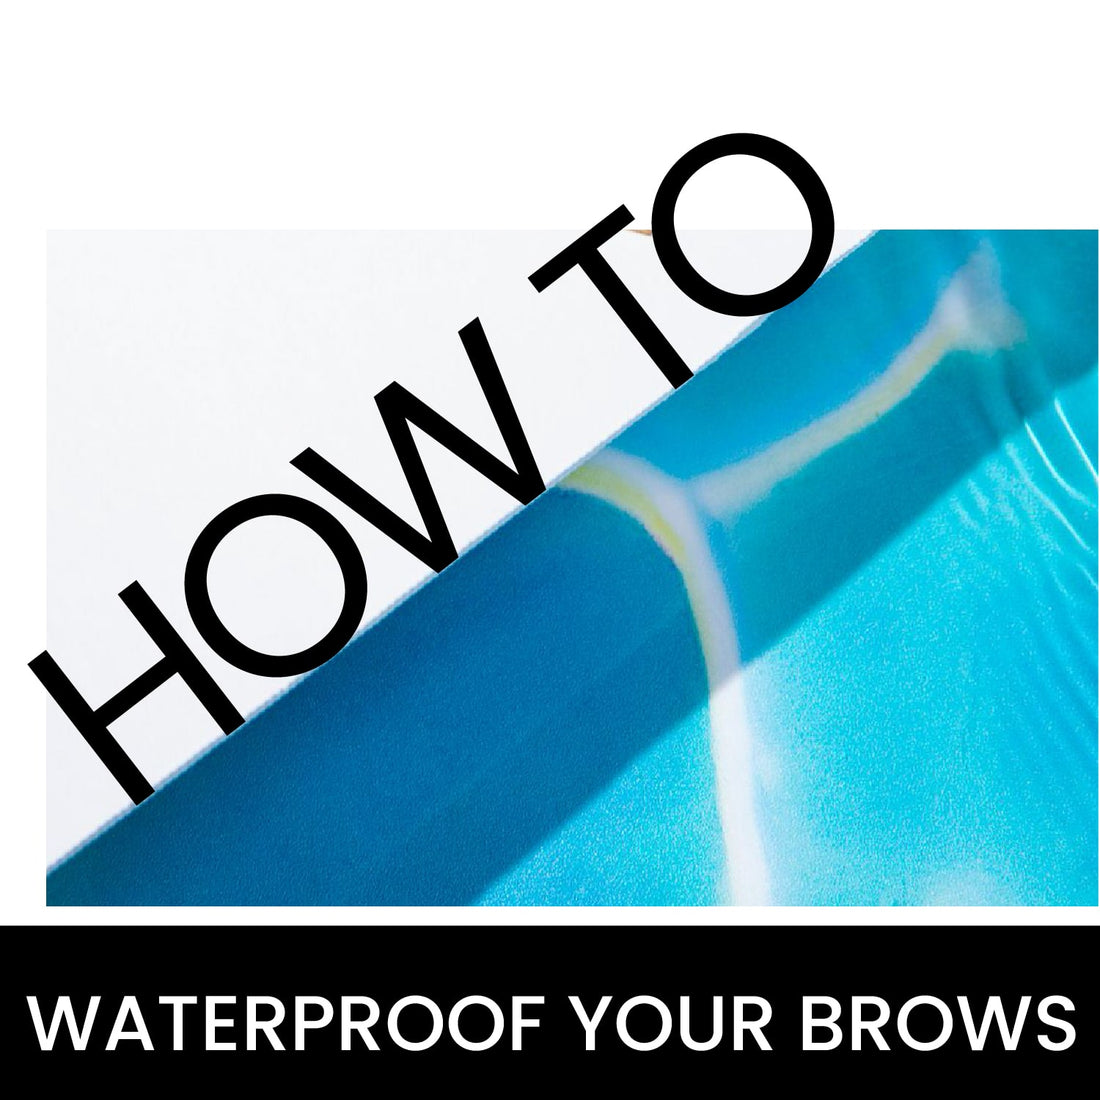 What makes eyebrow pens waterproof?